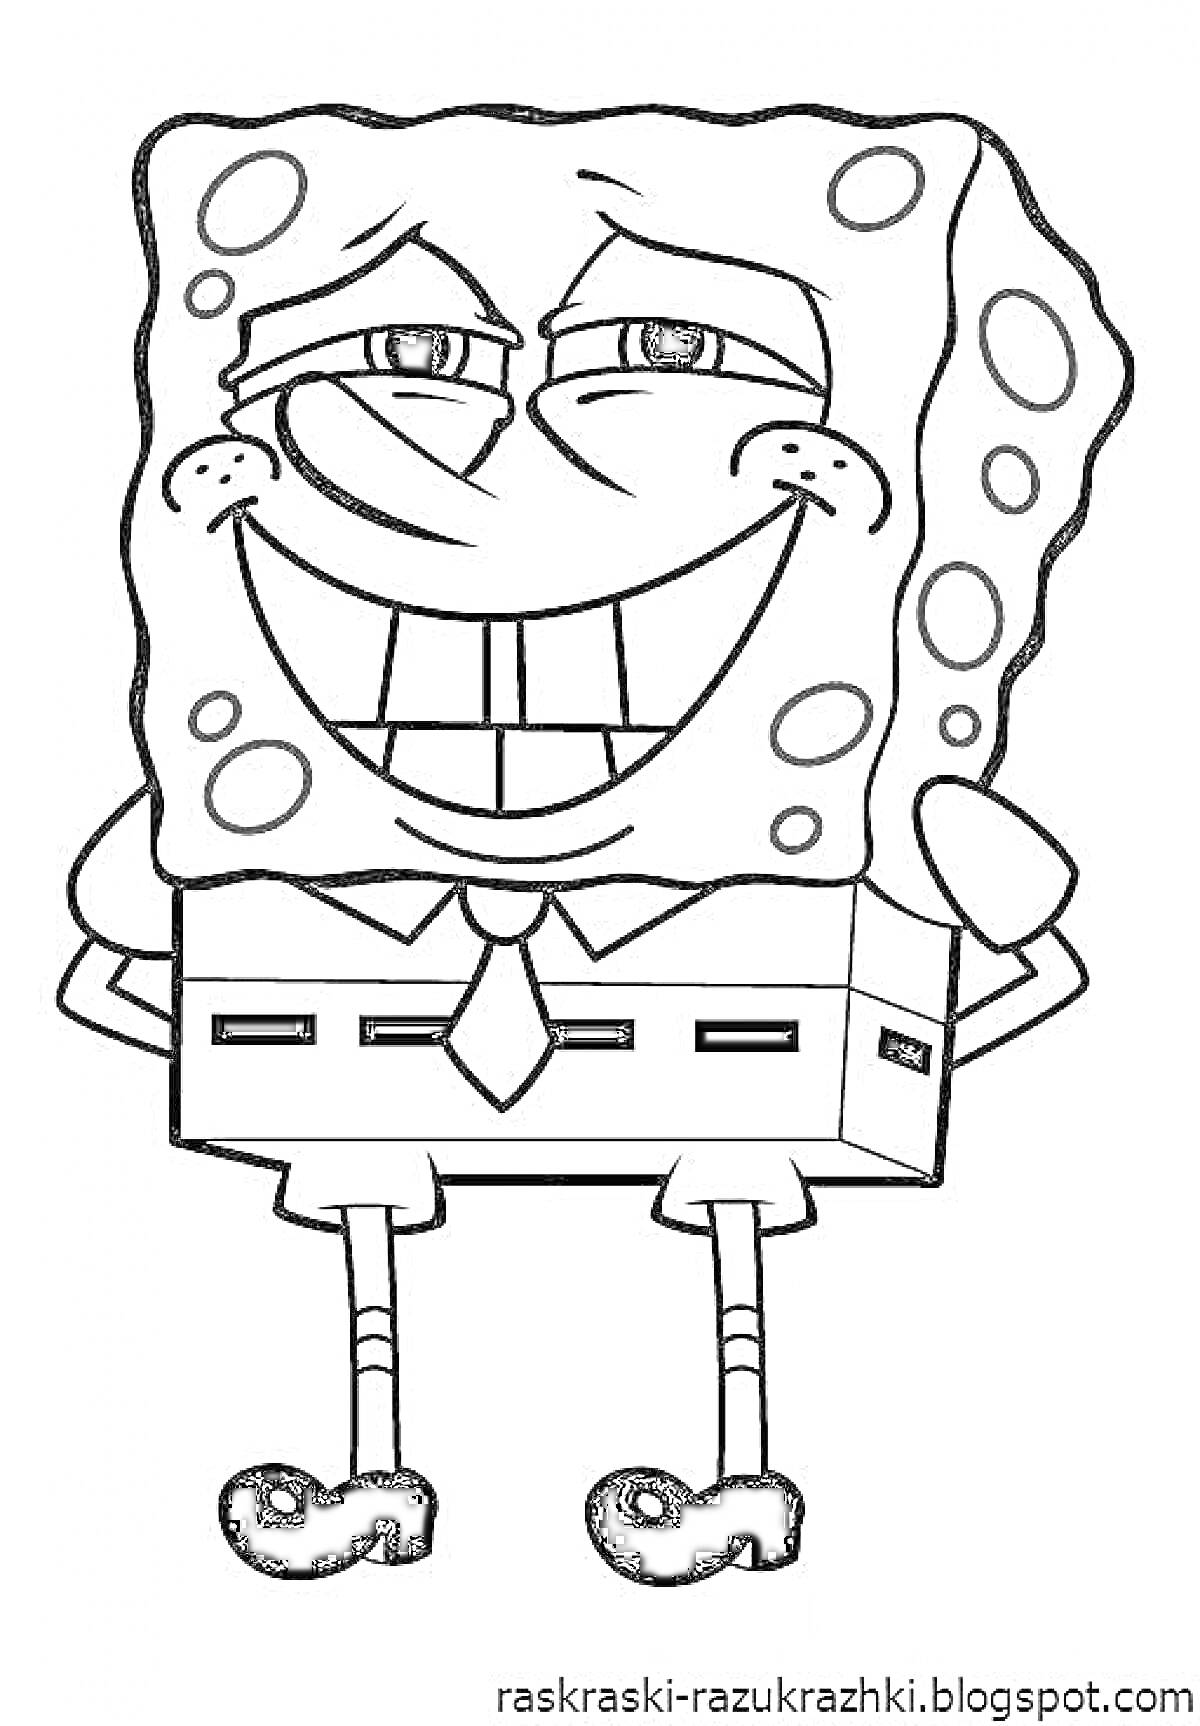 Раскраска Губка Боб с хитрой улыбкой, одет в рубашку с галстуком, с согнутыми руками и поднятыми руками